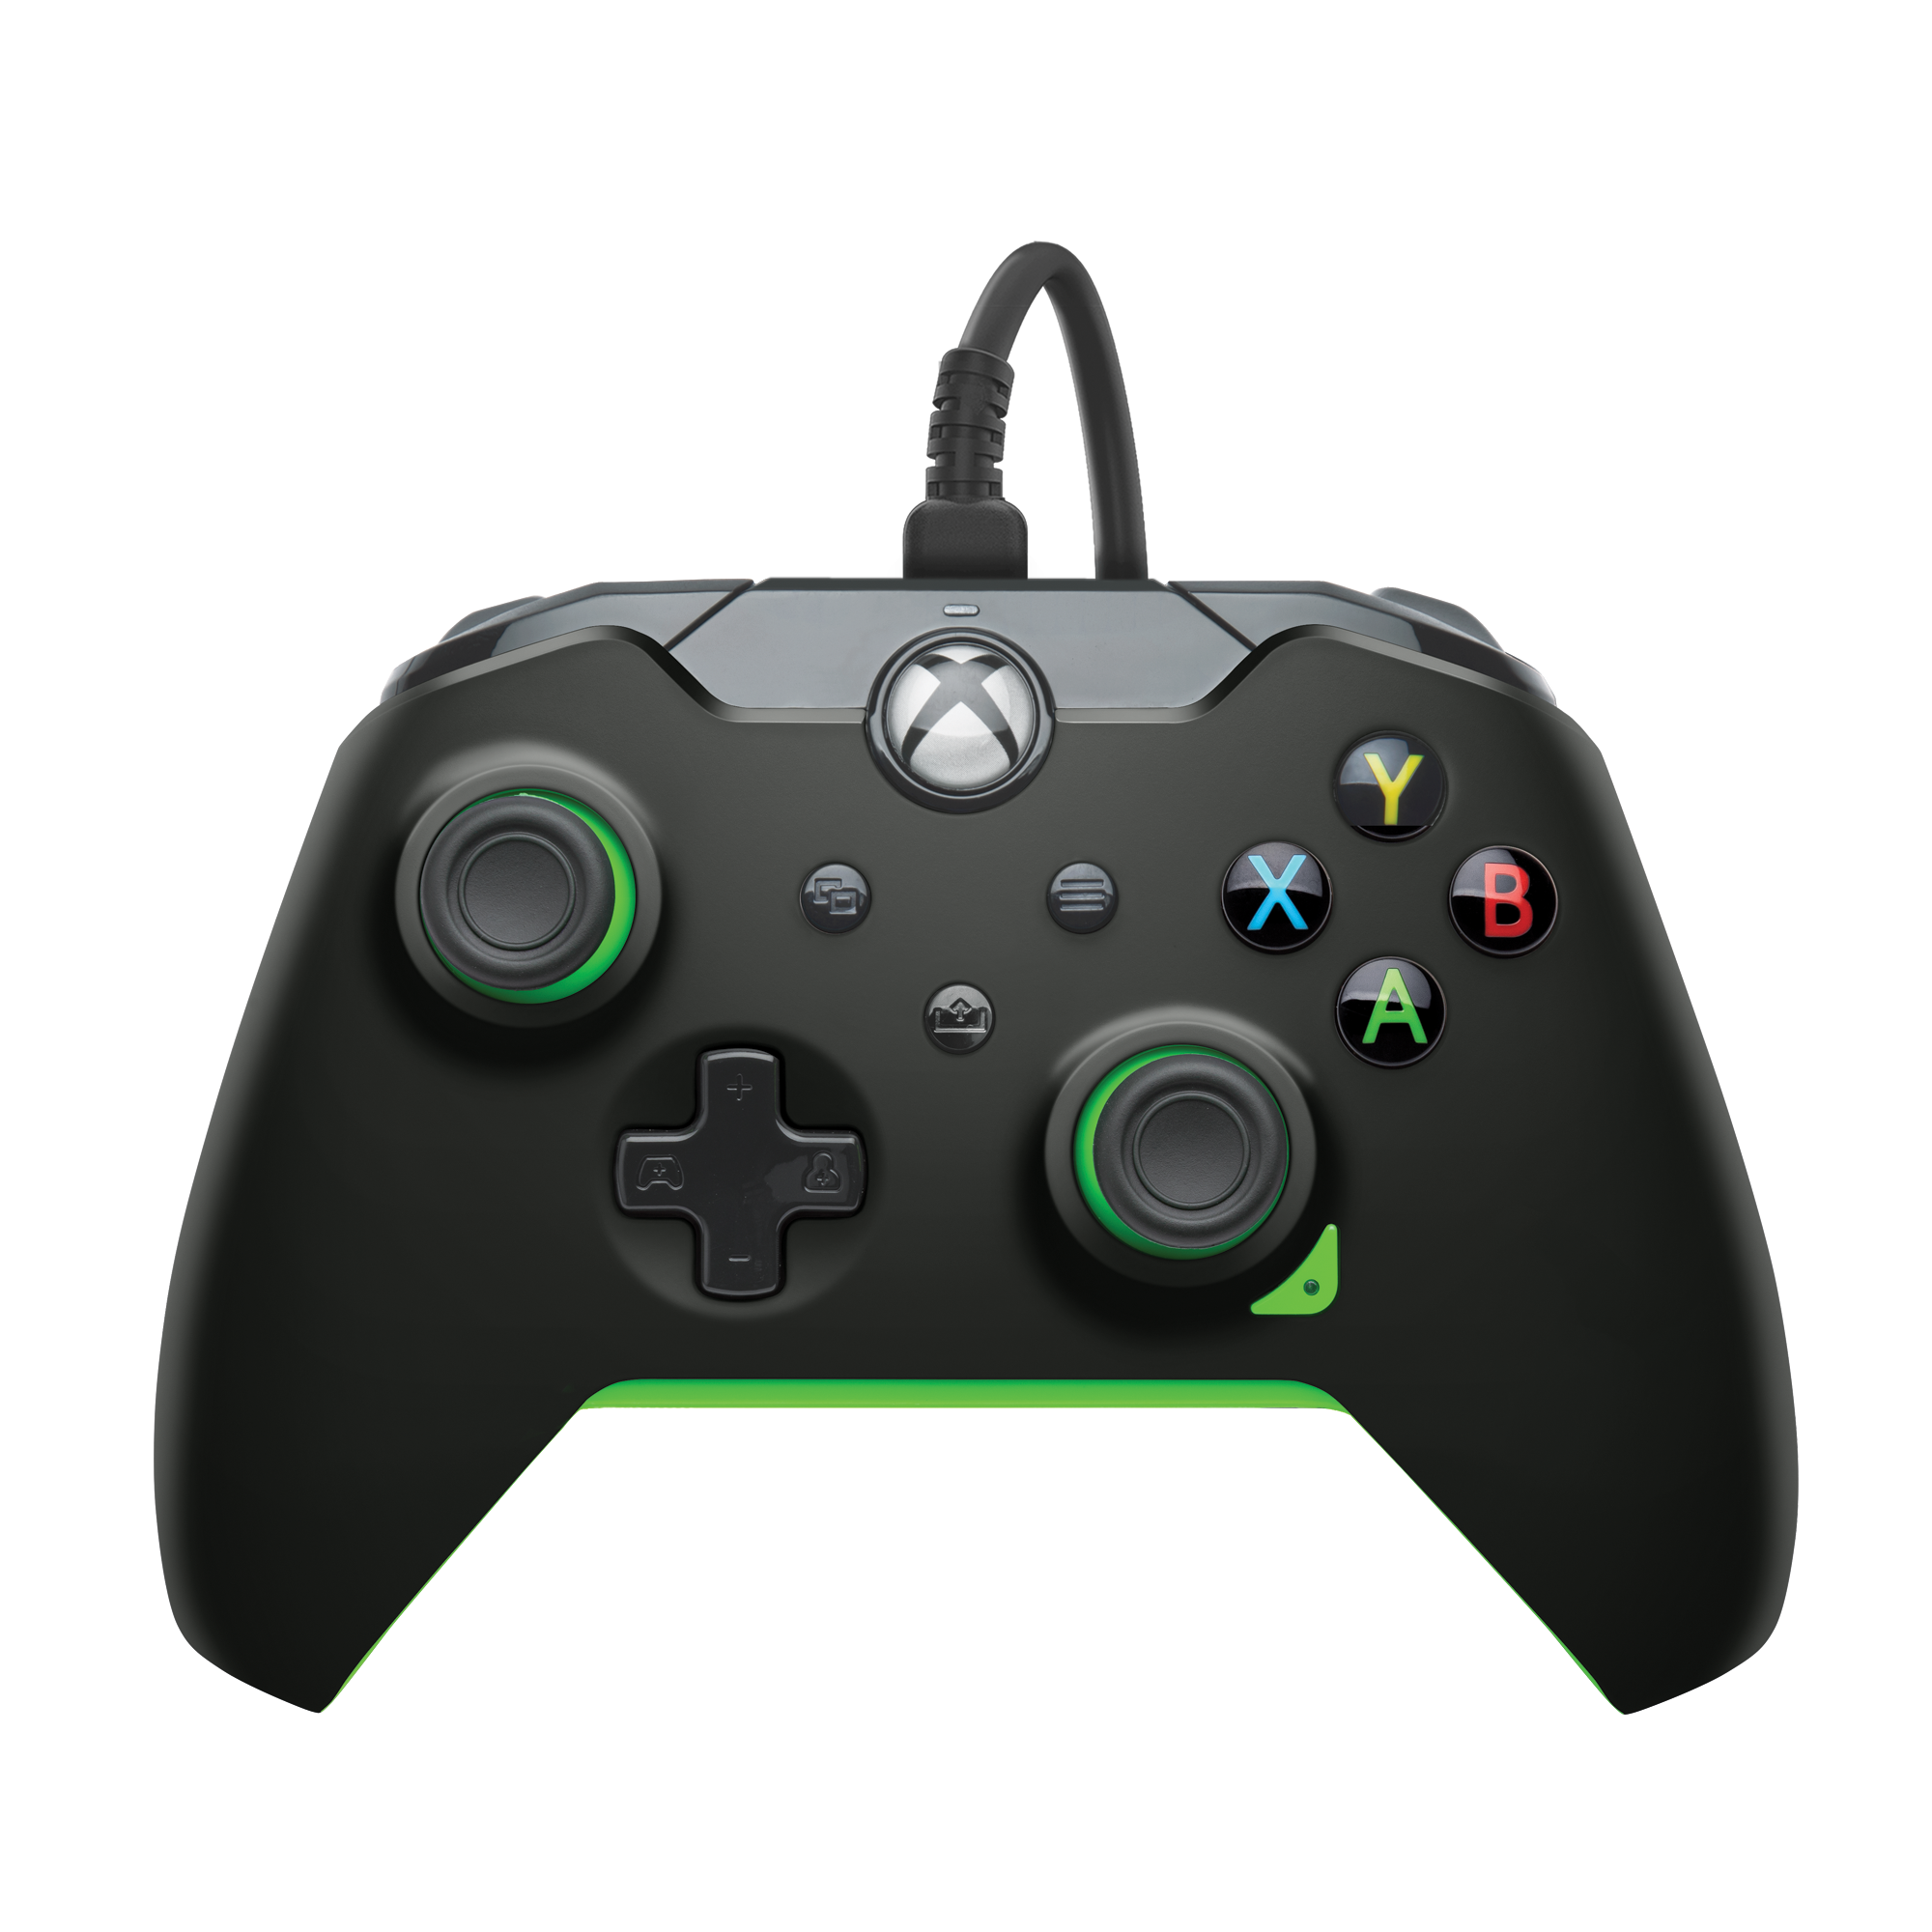 PDP Bedrade Controller: Neon Black Voor Xbox Series X|S, Xbox One en Windows 10/11